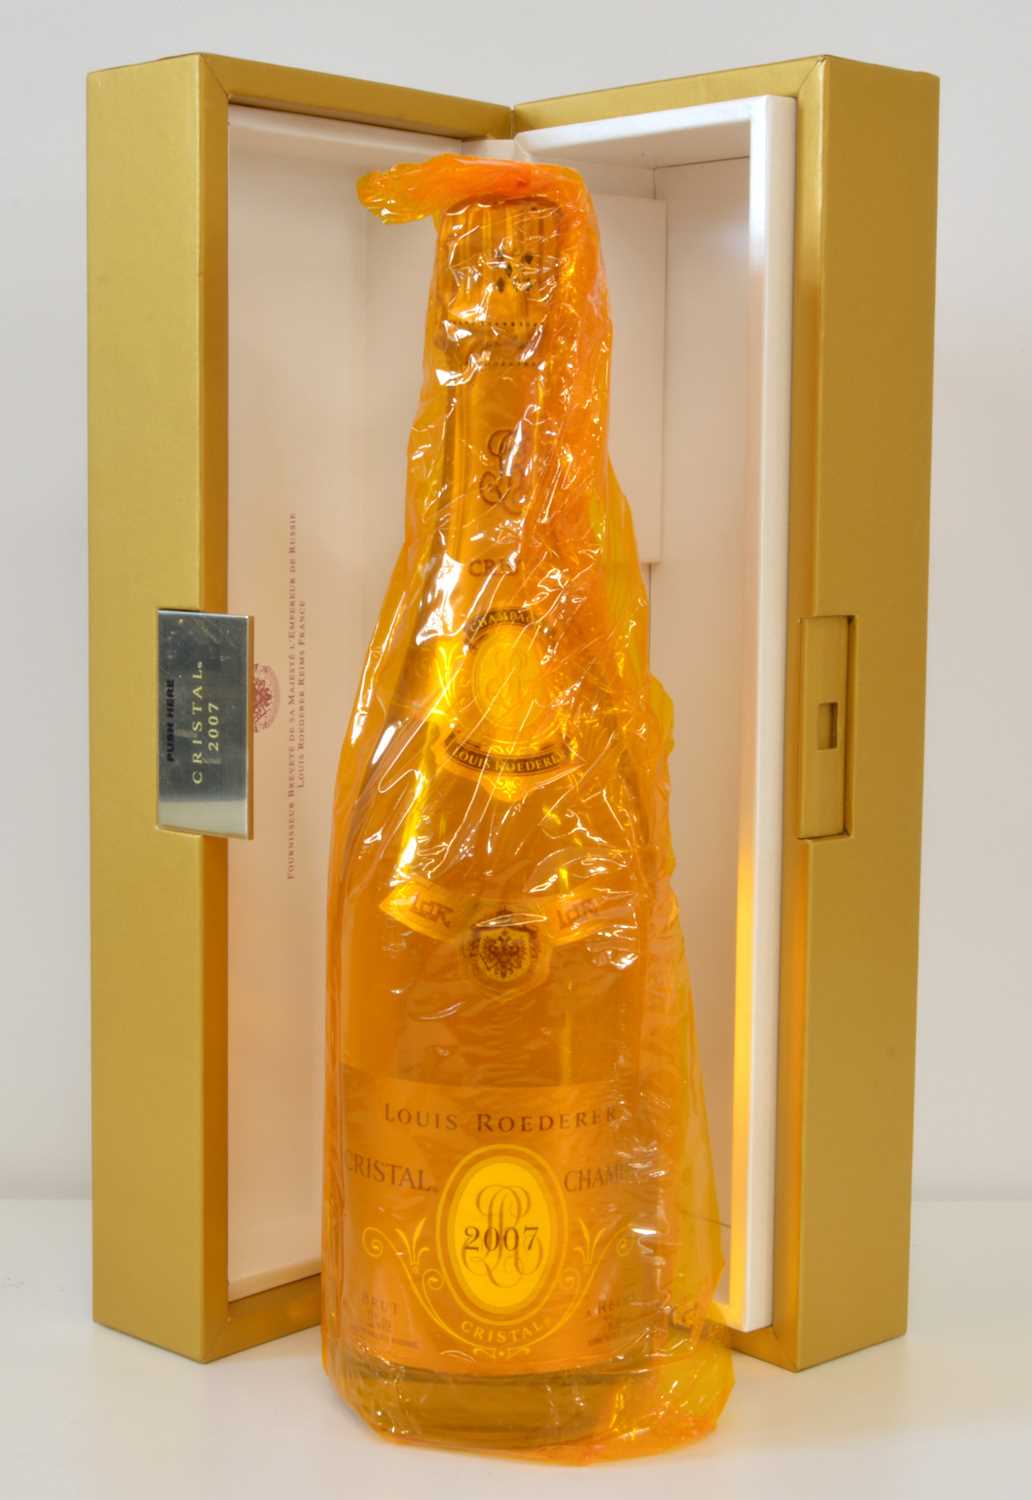 Lot 60 - Champagne Louis Roederer Cristal Vintage 2007